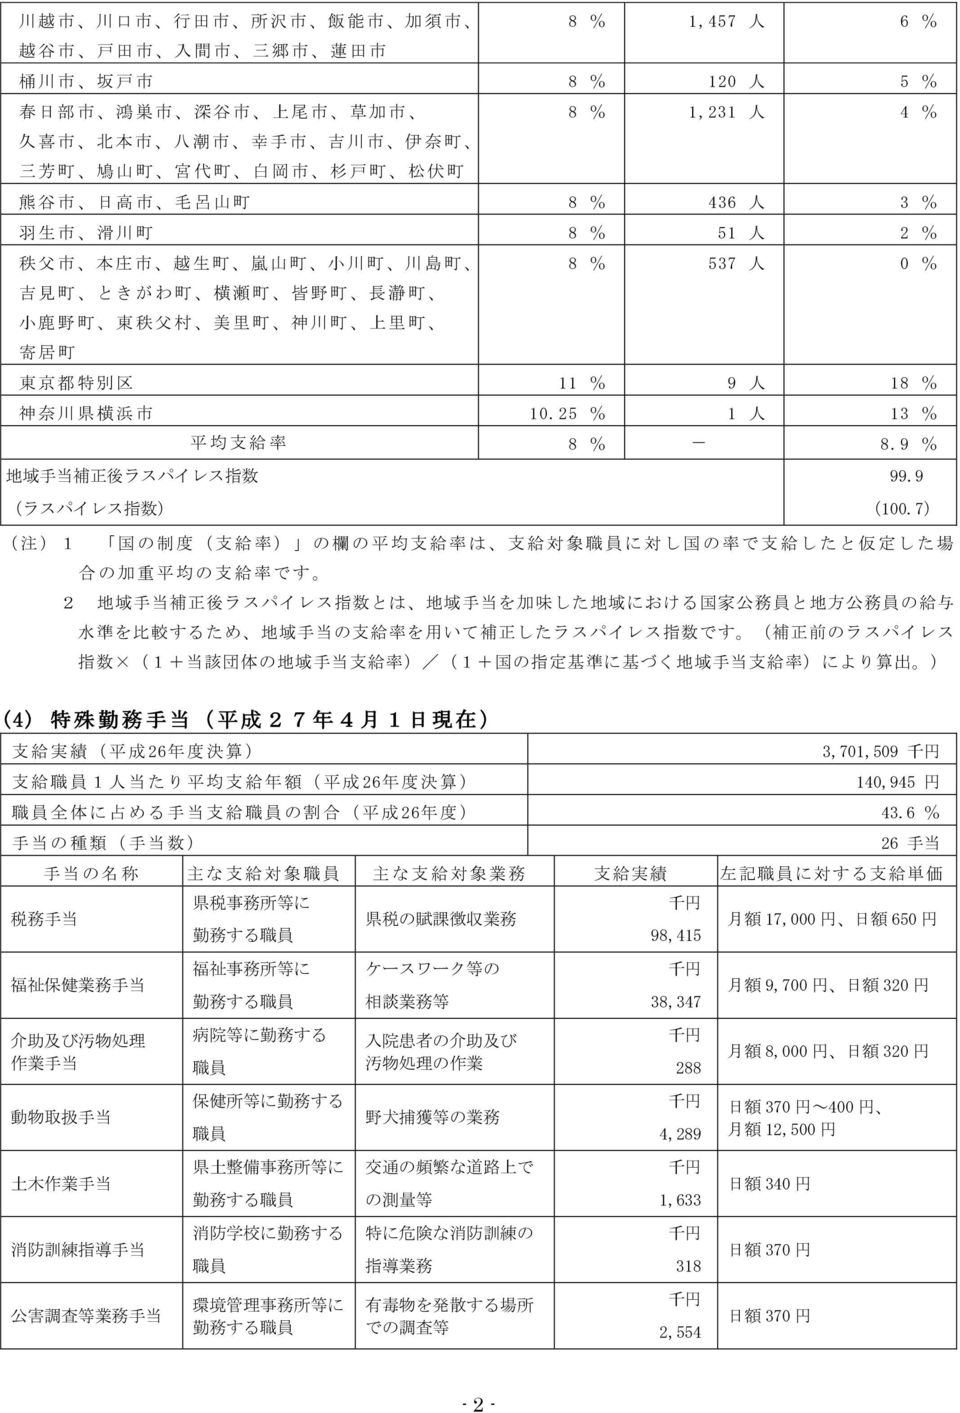 里 町 寄 居 町 東 京 都 特 別 区 11 % 9 人 18 % 神 奈 川 県 横 浜 市 1.25 % 1 人 13 % 平 均 支 給 率 8 % 8.9 % 地 域 手 当 補 正 後 ラスパイレス 指 数 (ラスパイレス 指 数 ) 99.9 (1.